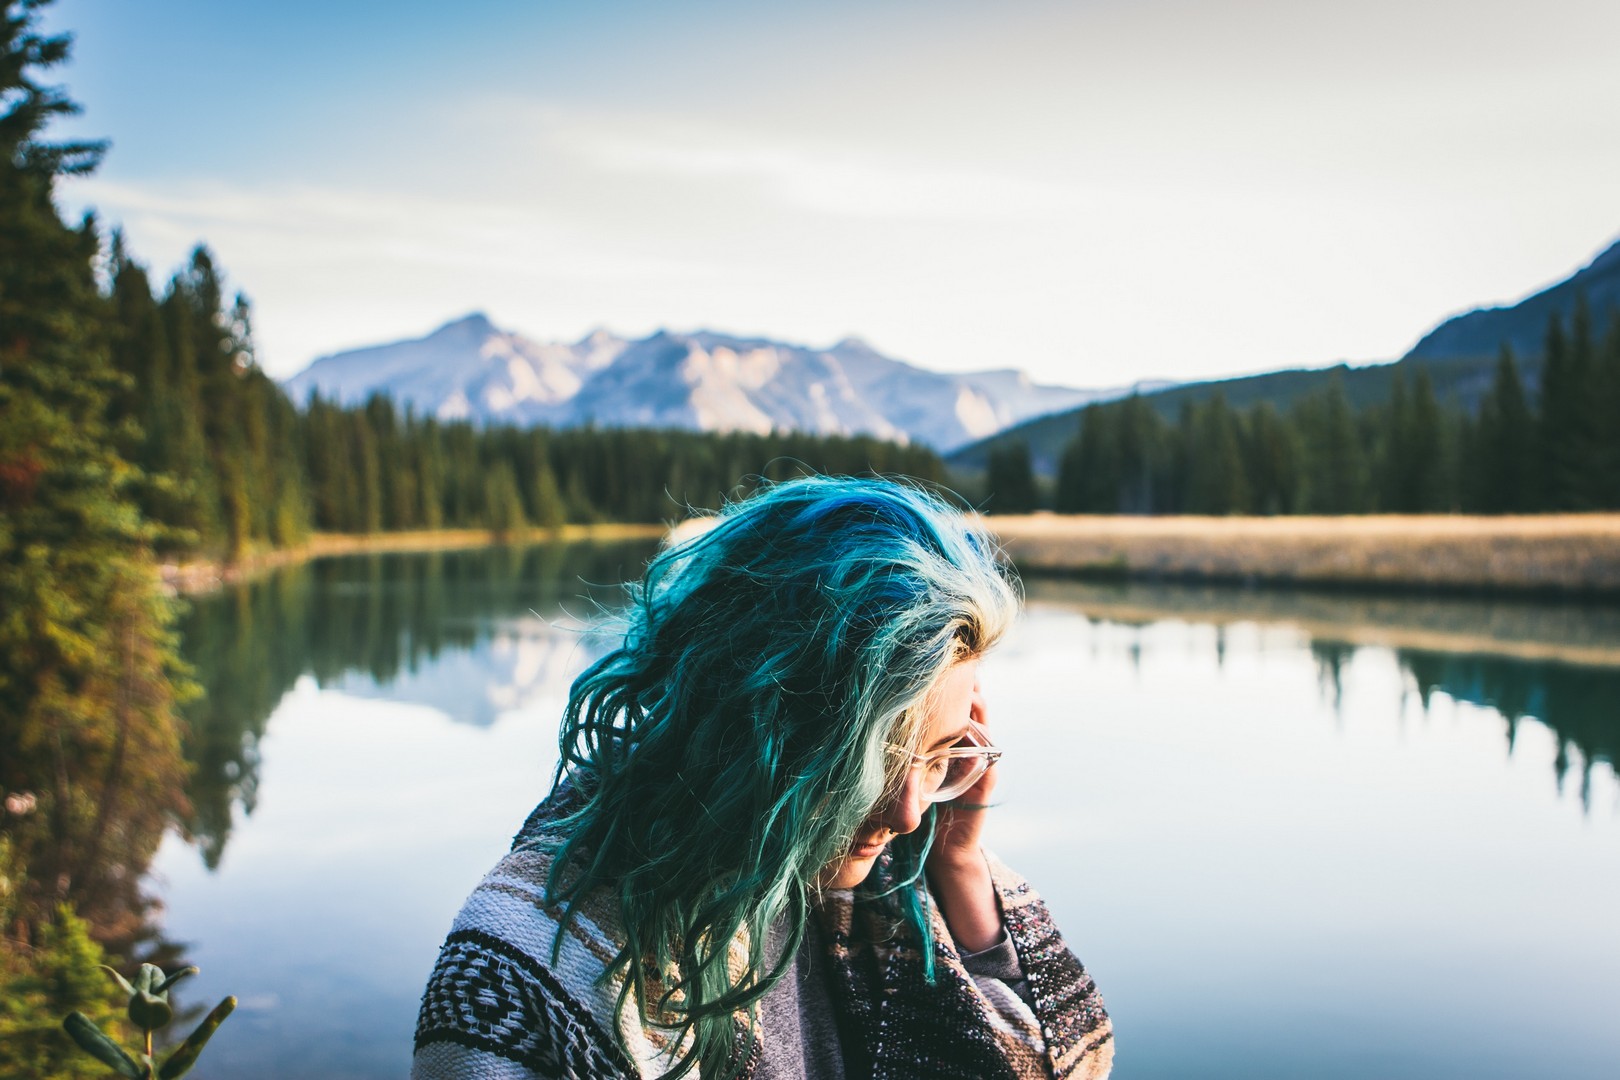 Mulher olhando para baixo, de perfil, cabelos azuis com mesclas loiras, em uma paisagem repleta de coníferas, com um lago atrás e montanhas ao fundo.